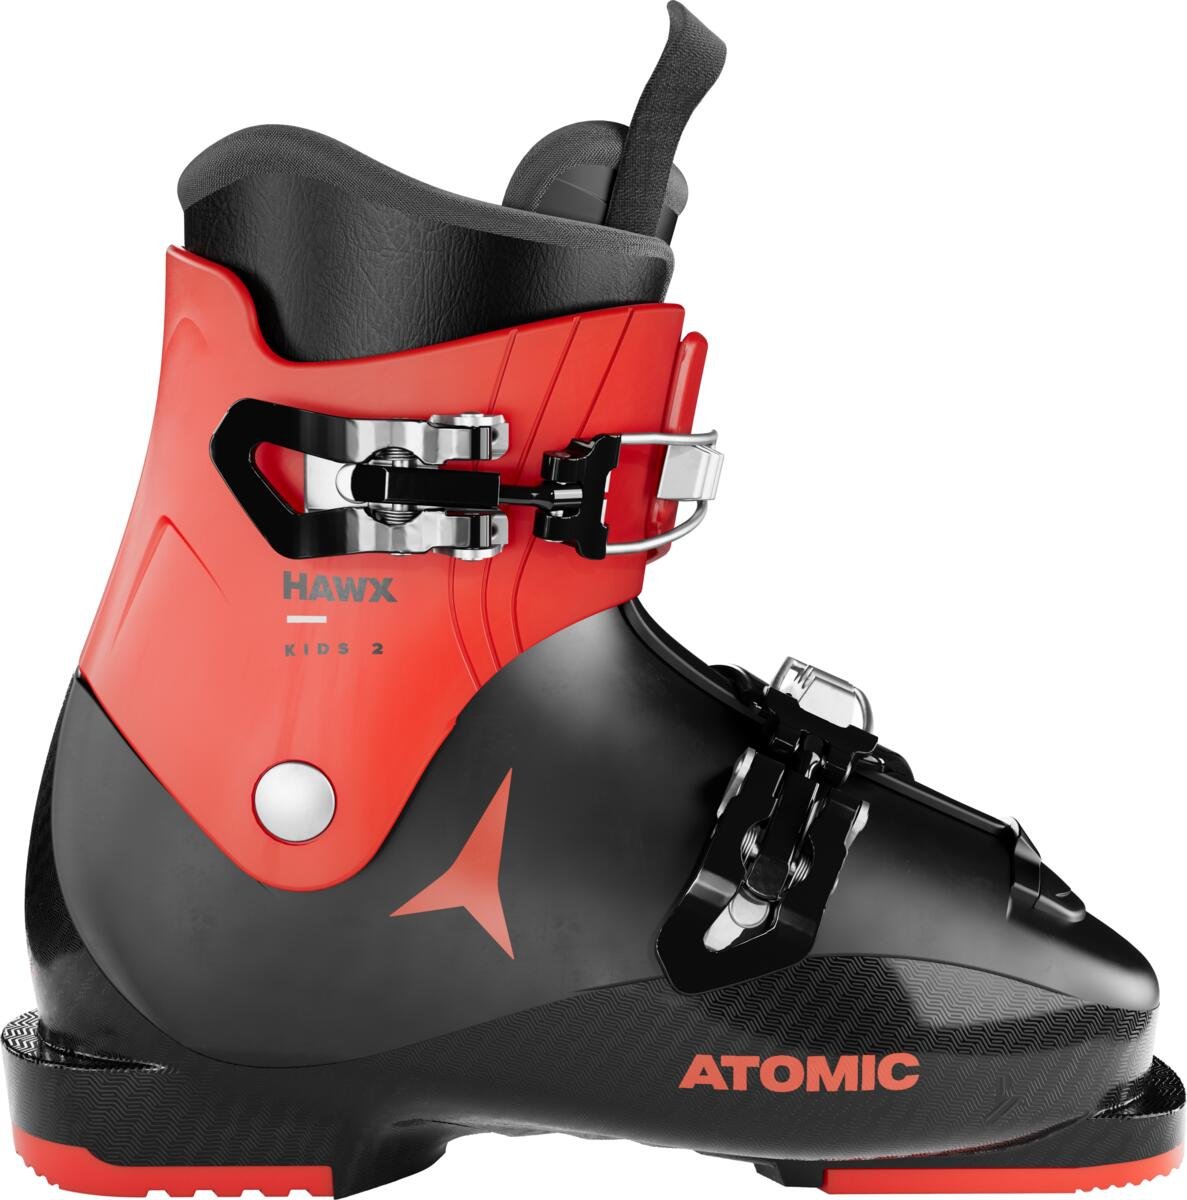 Detské lyžiarky Atomic Hawx Kids 2 Veľkosť: 18 cm